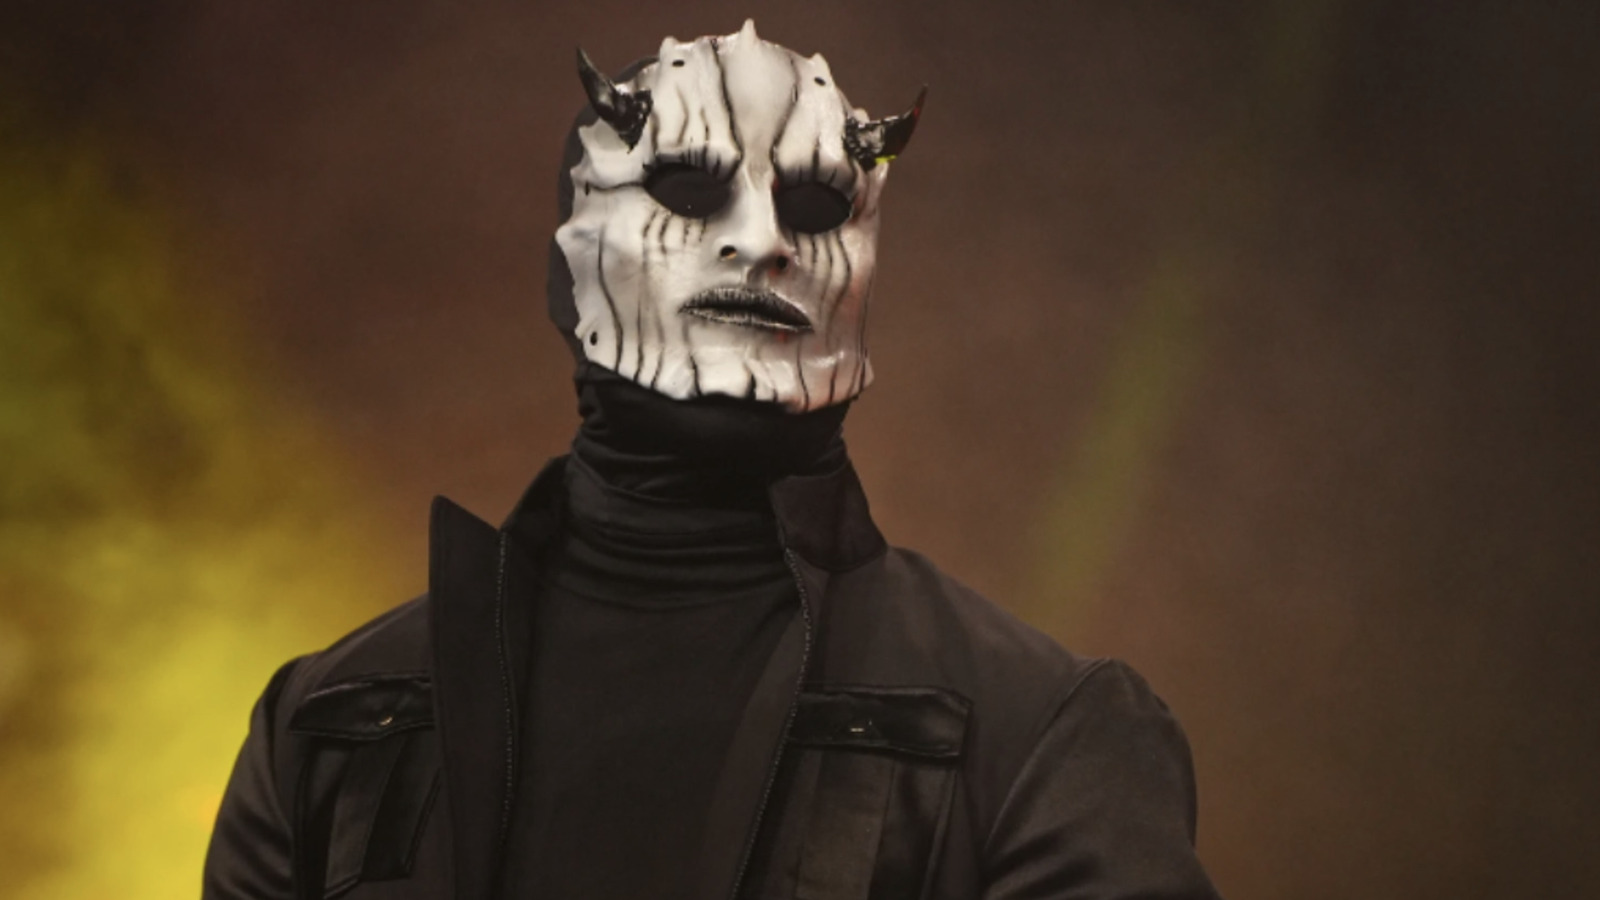 Danh tính của Satan và những người bạn đồng hành đeo mặt nạ của hắn được tiết lộ ở phần cuối của AEW Worlds